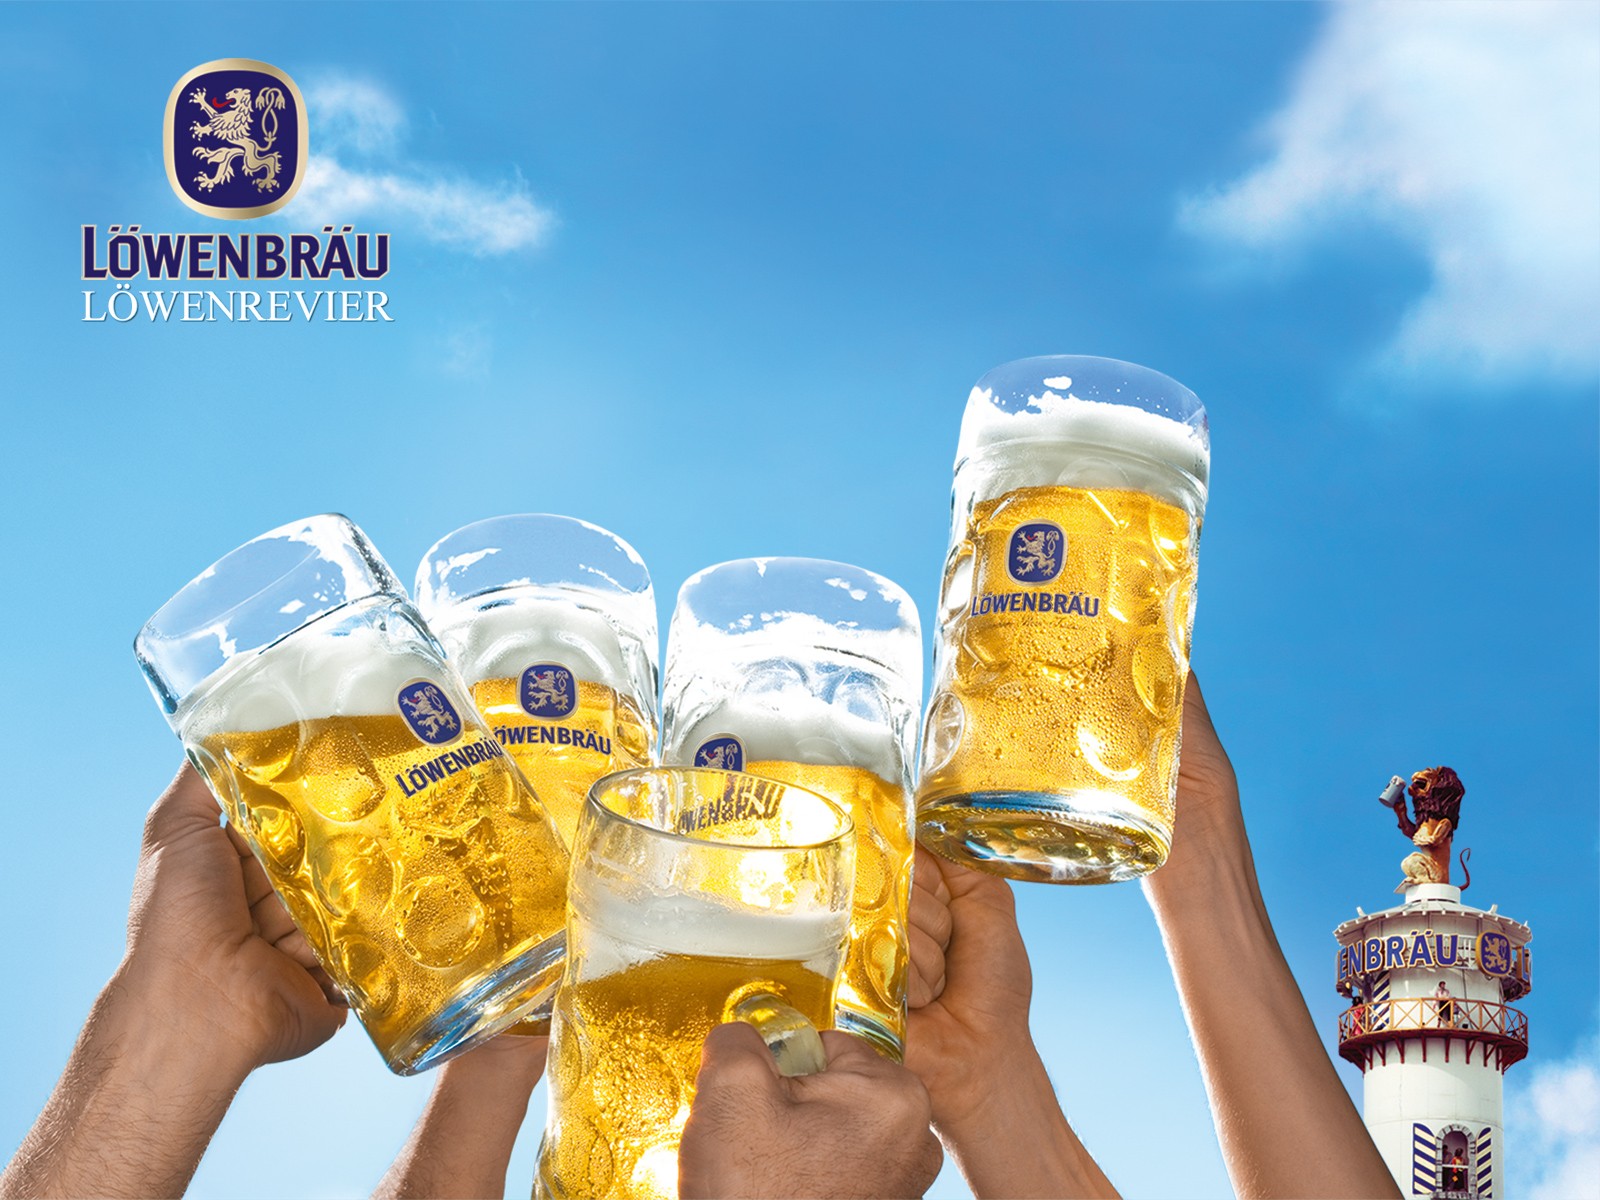 General 1600x1200 beer alcohol drinking glass logo Löwenbräu (Beer) German mug advertisements beer mugs